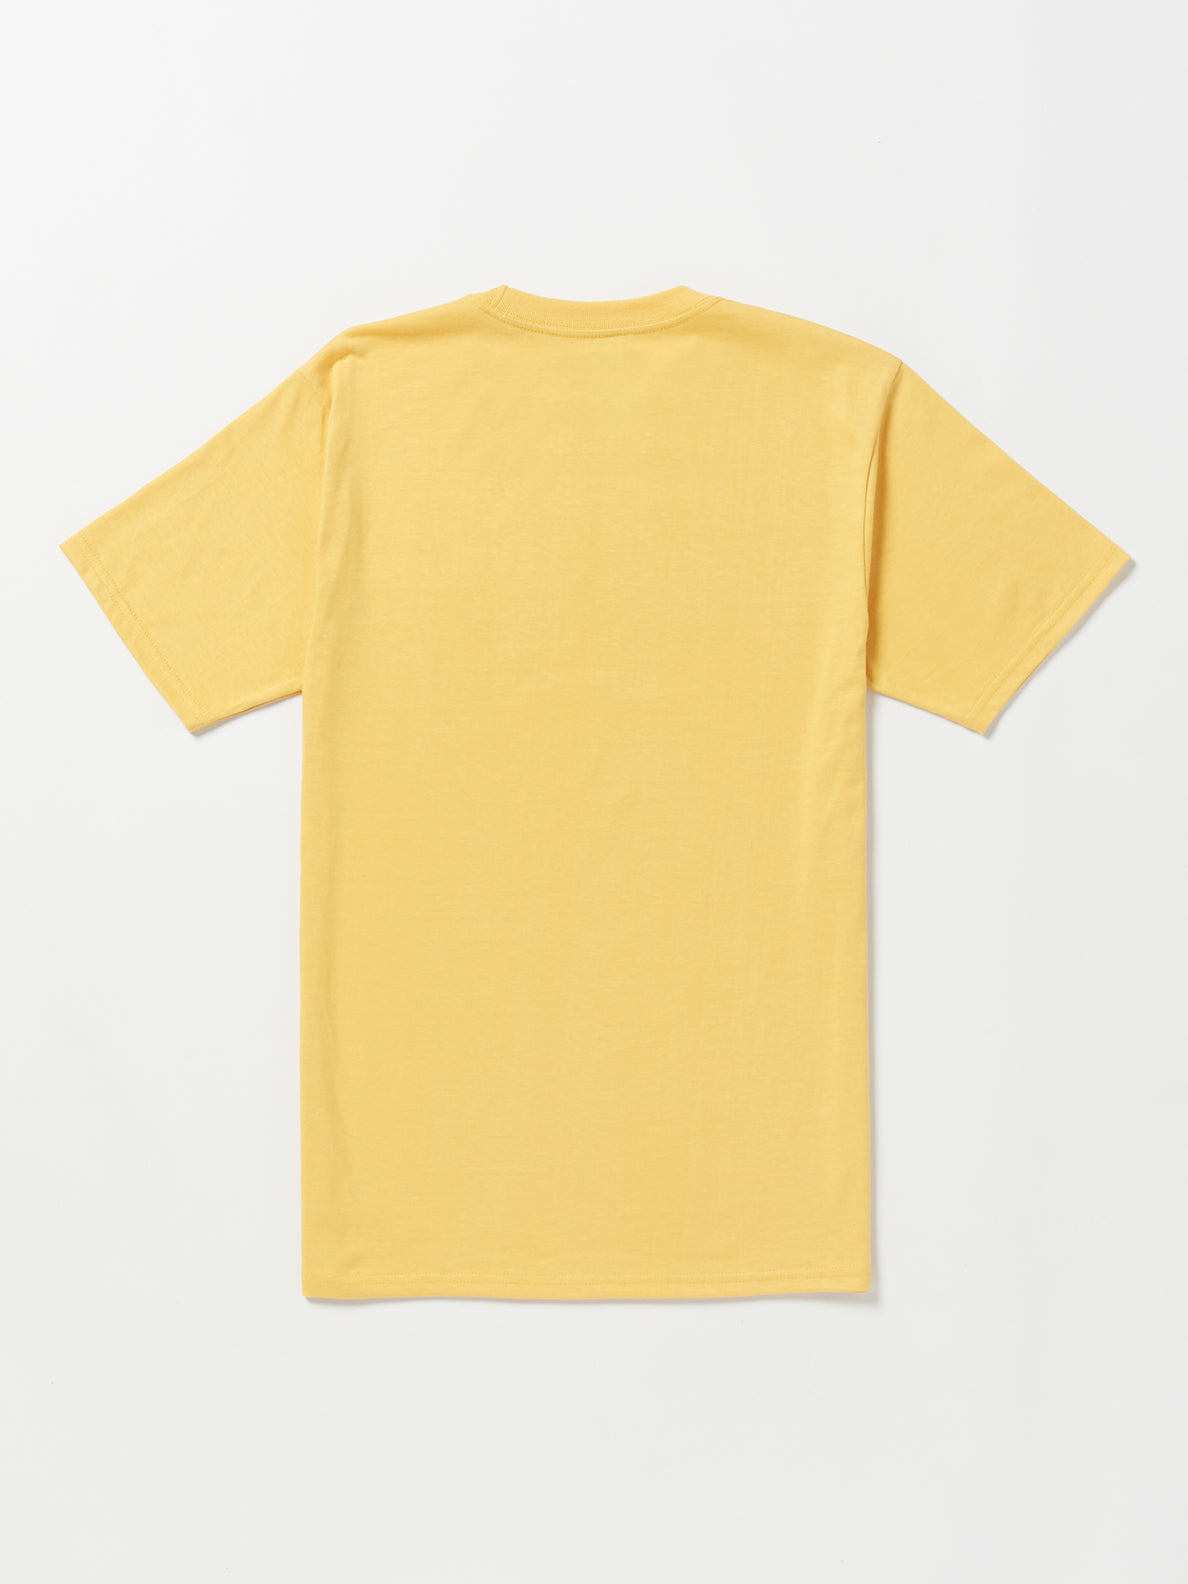 Phaset Short Sleeve Tee - Golden Mustard (A3532305_GLM) [B]